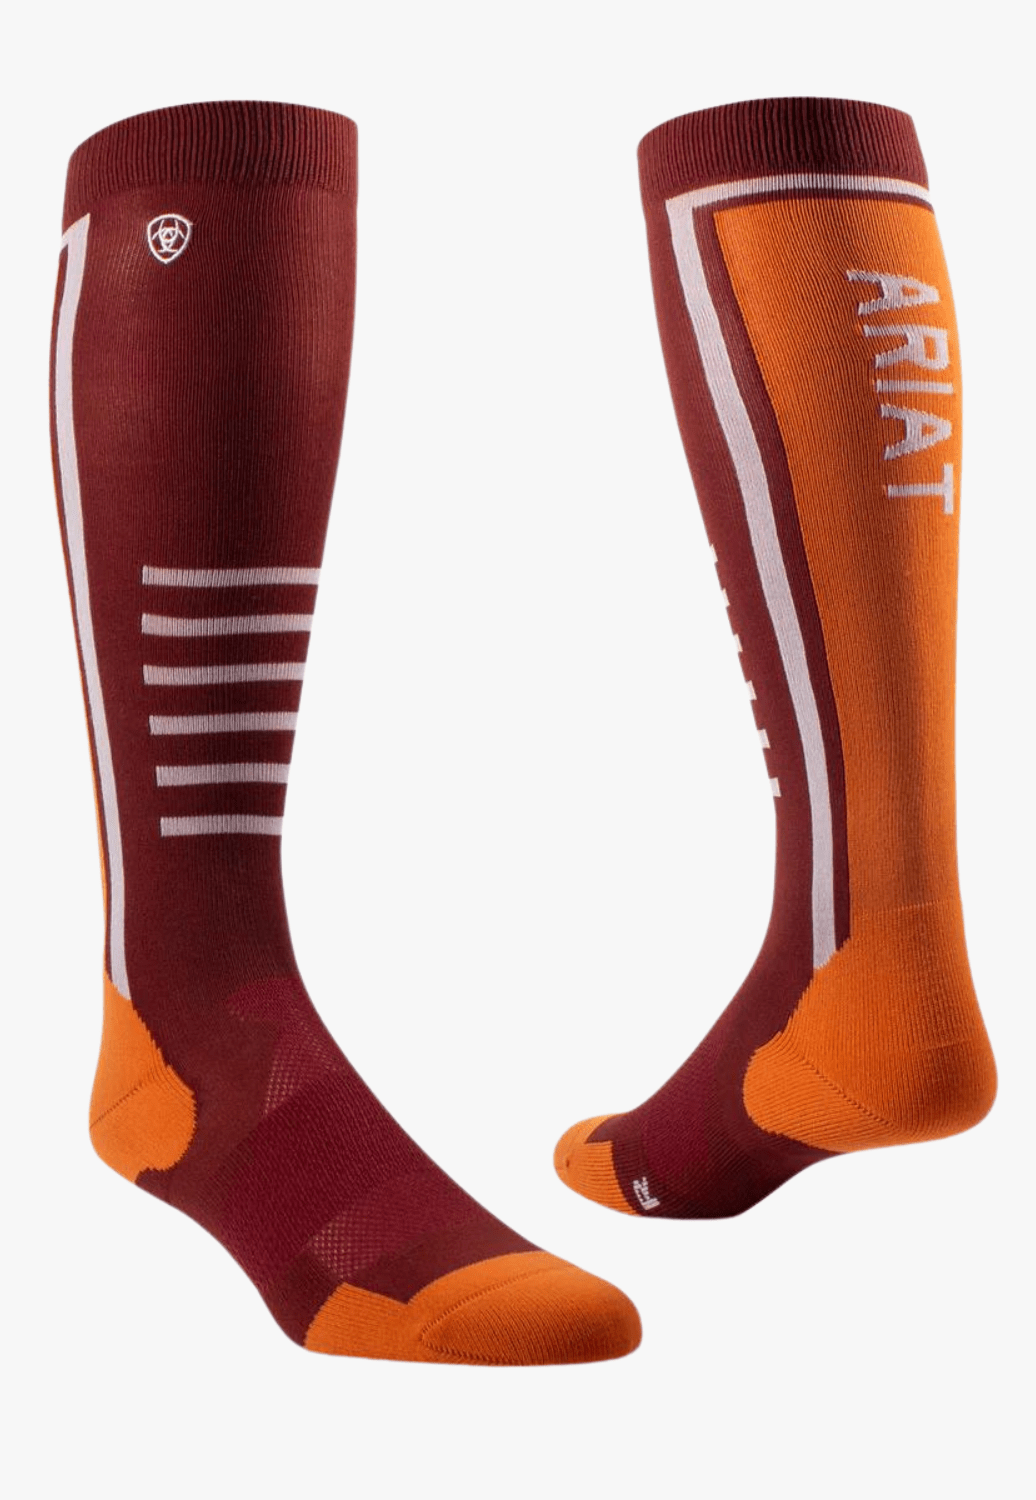 Ariat ACCESSORIES-Socks Fired Brick/Pumpkin Ariat Uni Ariattek Slimline Performance Socks